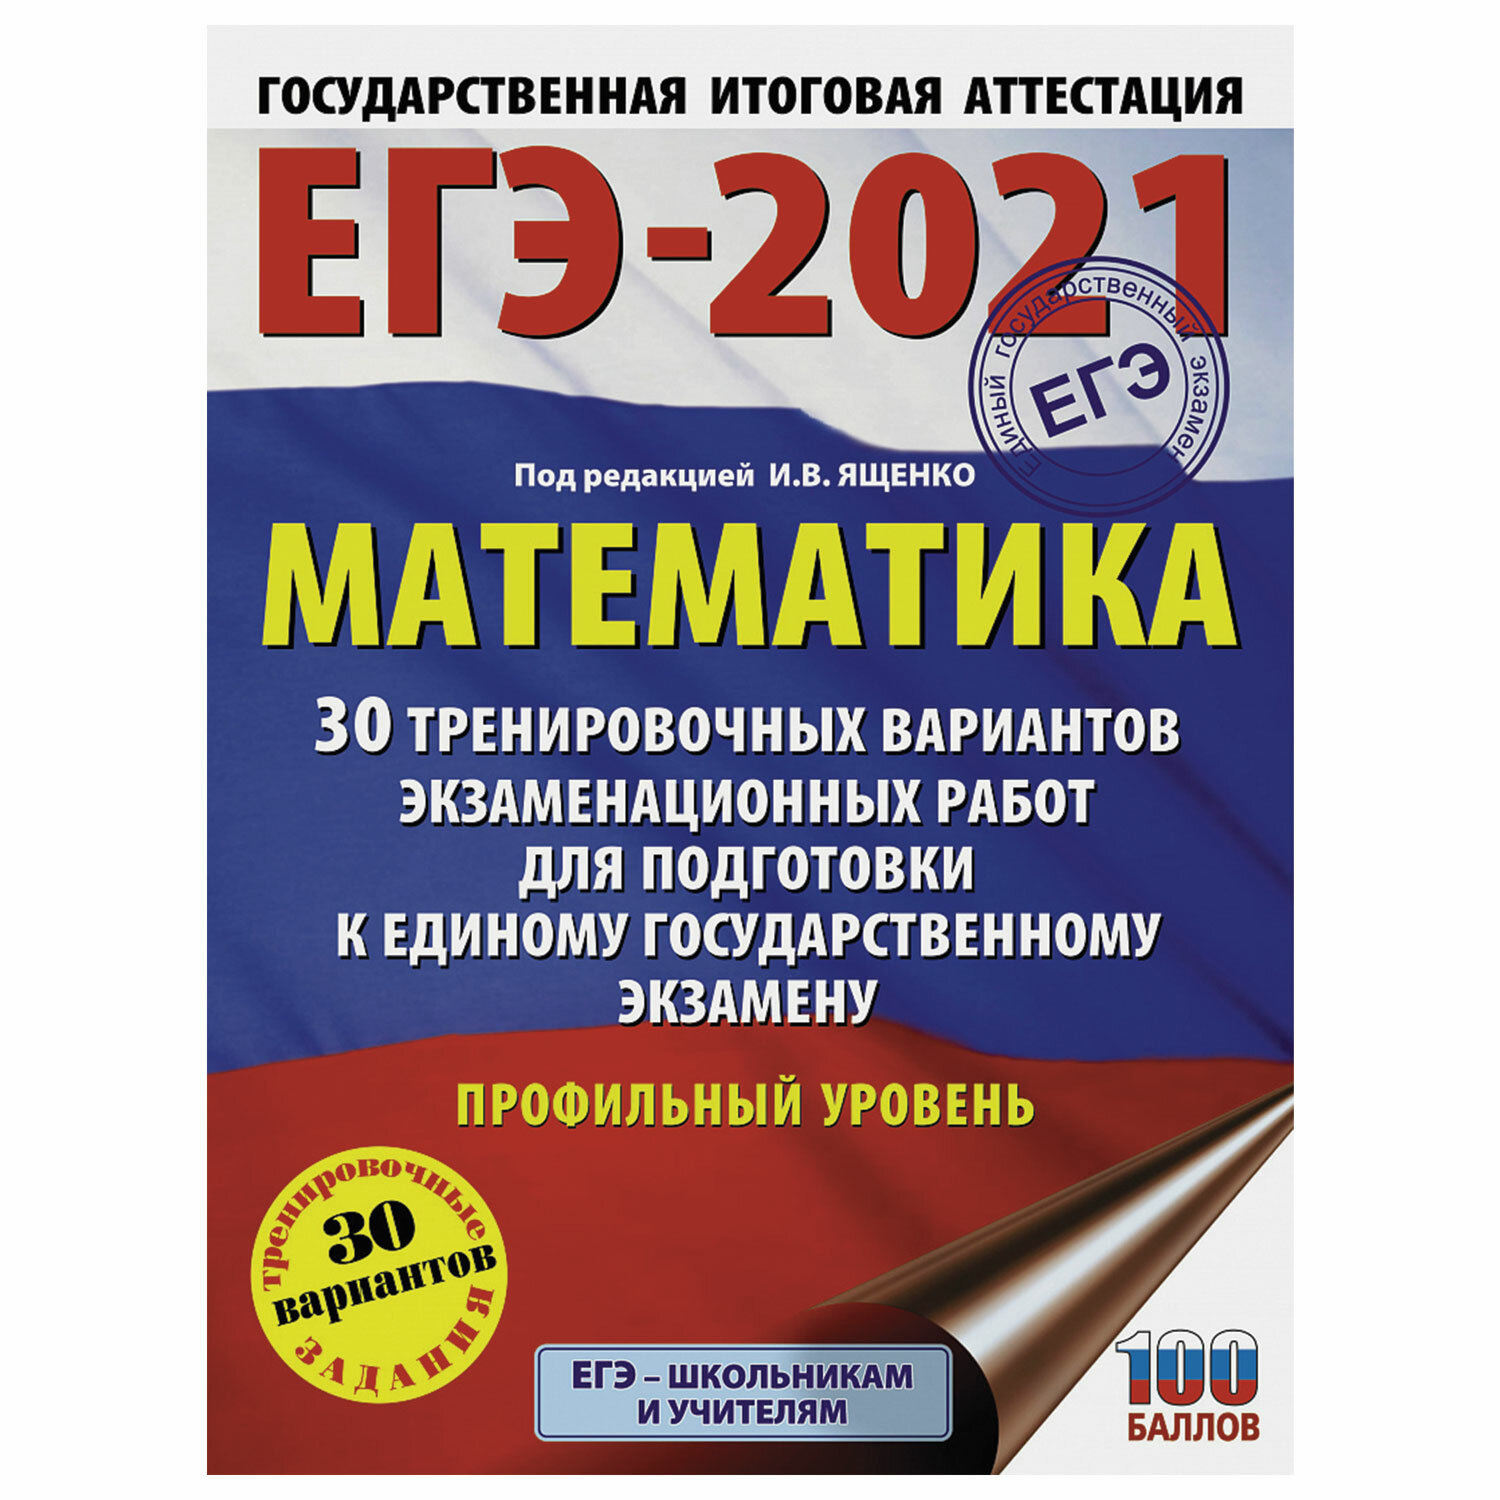 Пособие по подготовке к ЕГЭ АСТ 2021 год, "Математика, 30 тренировочных вариантов" (853670), фото